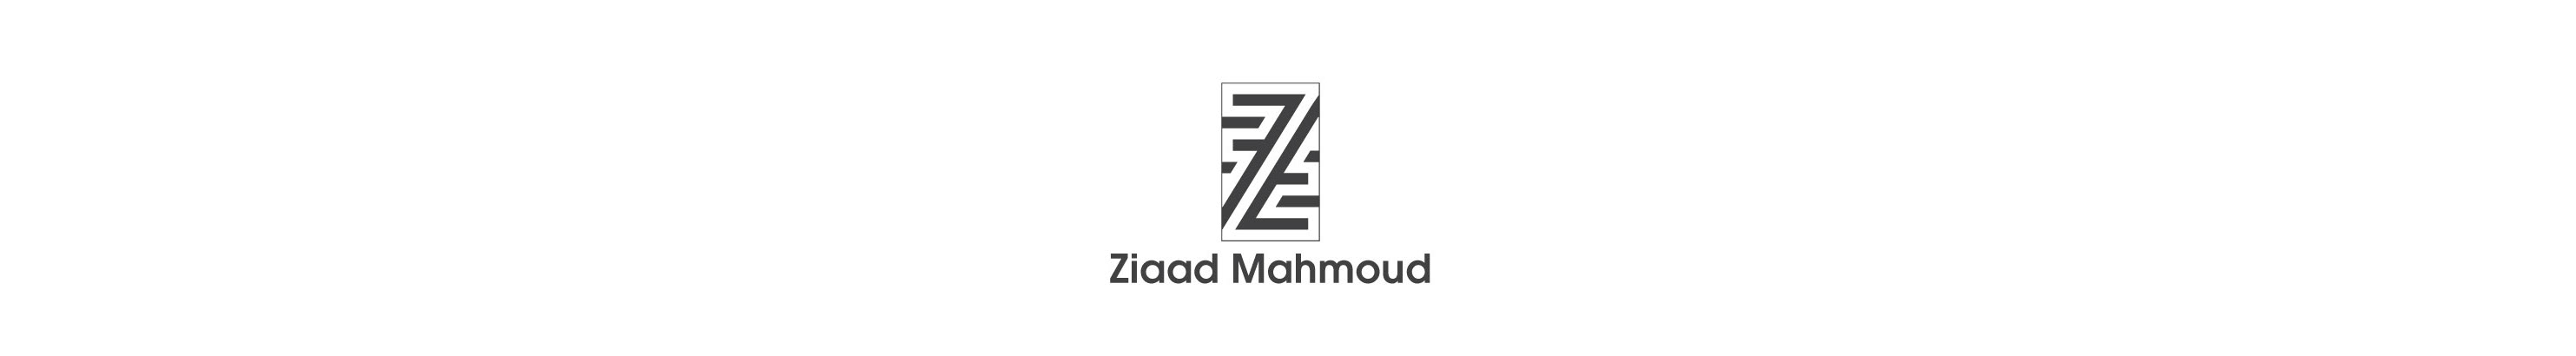 Banner de perfil de Ziaad Mahmoud